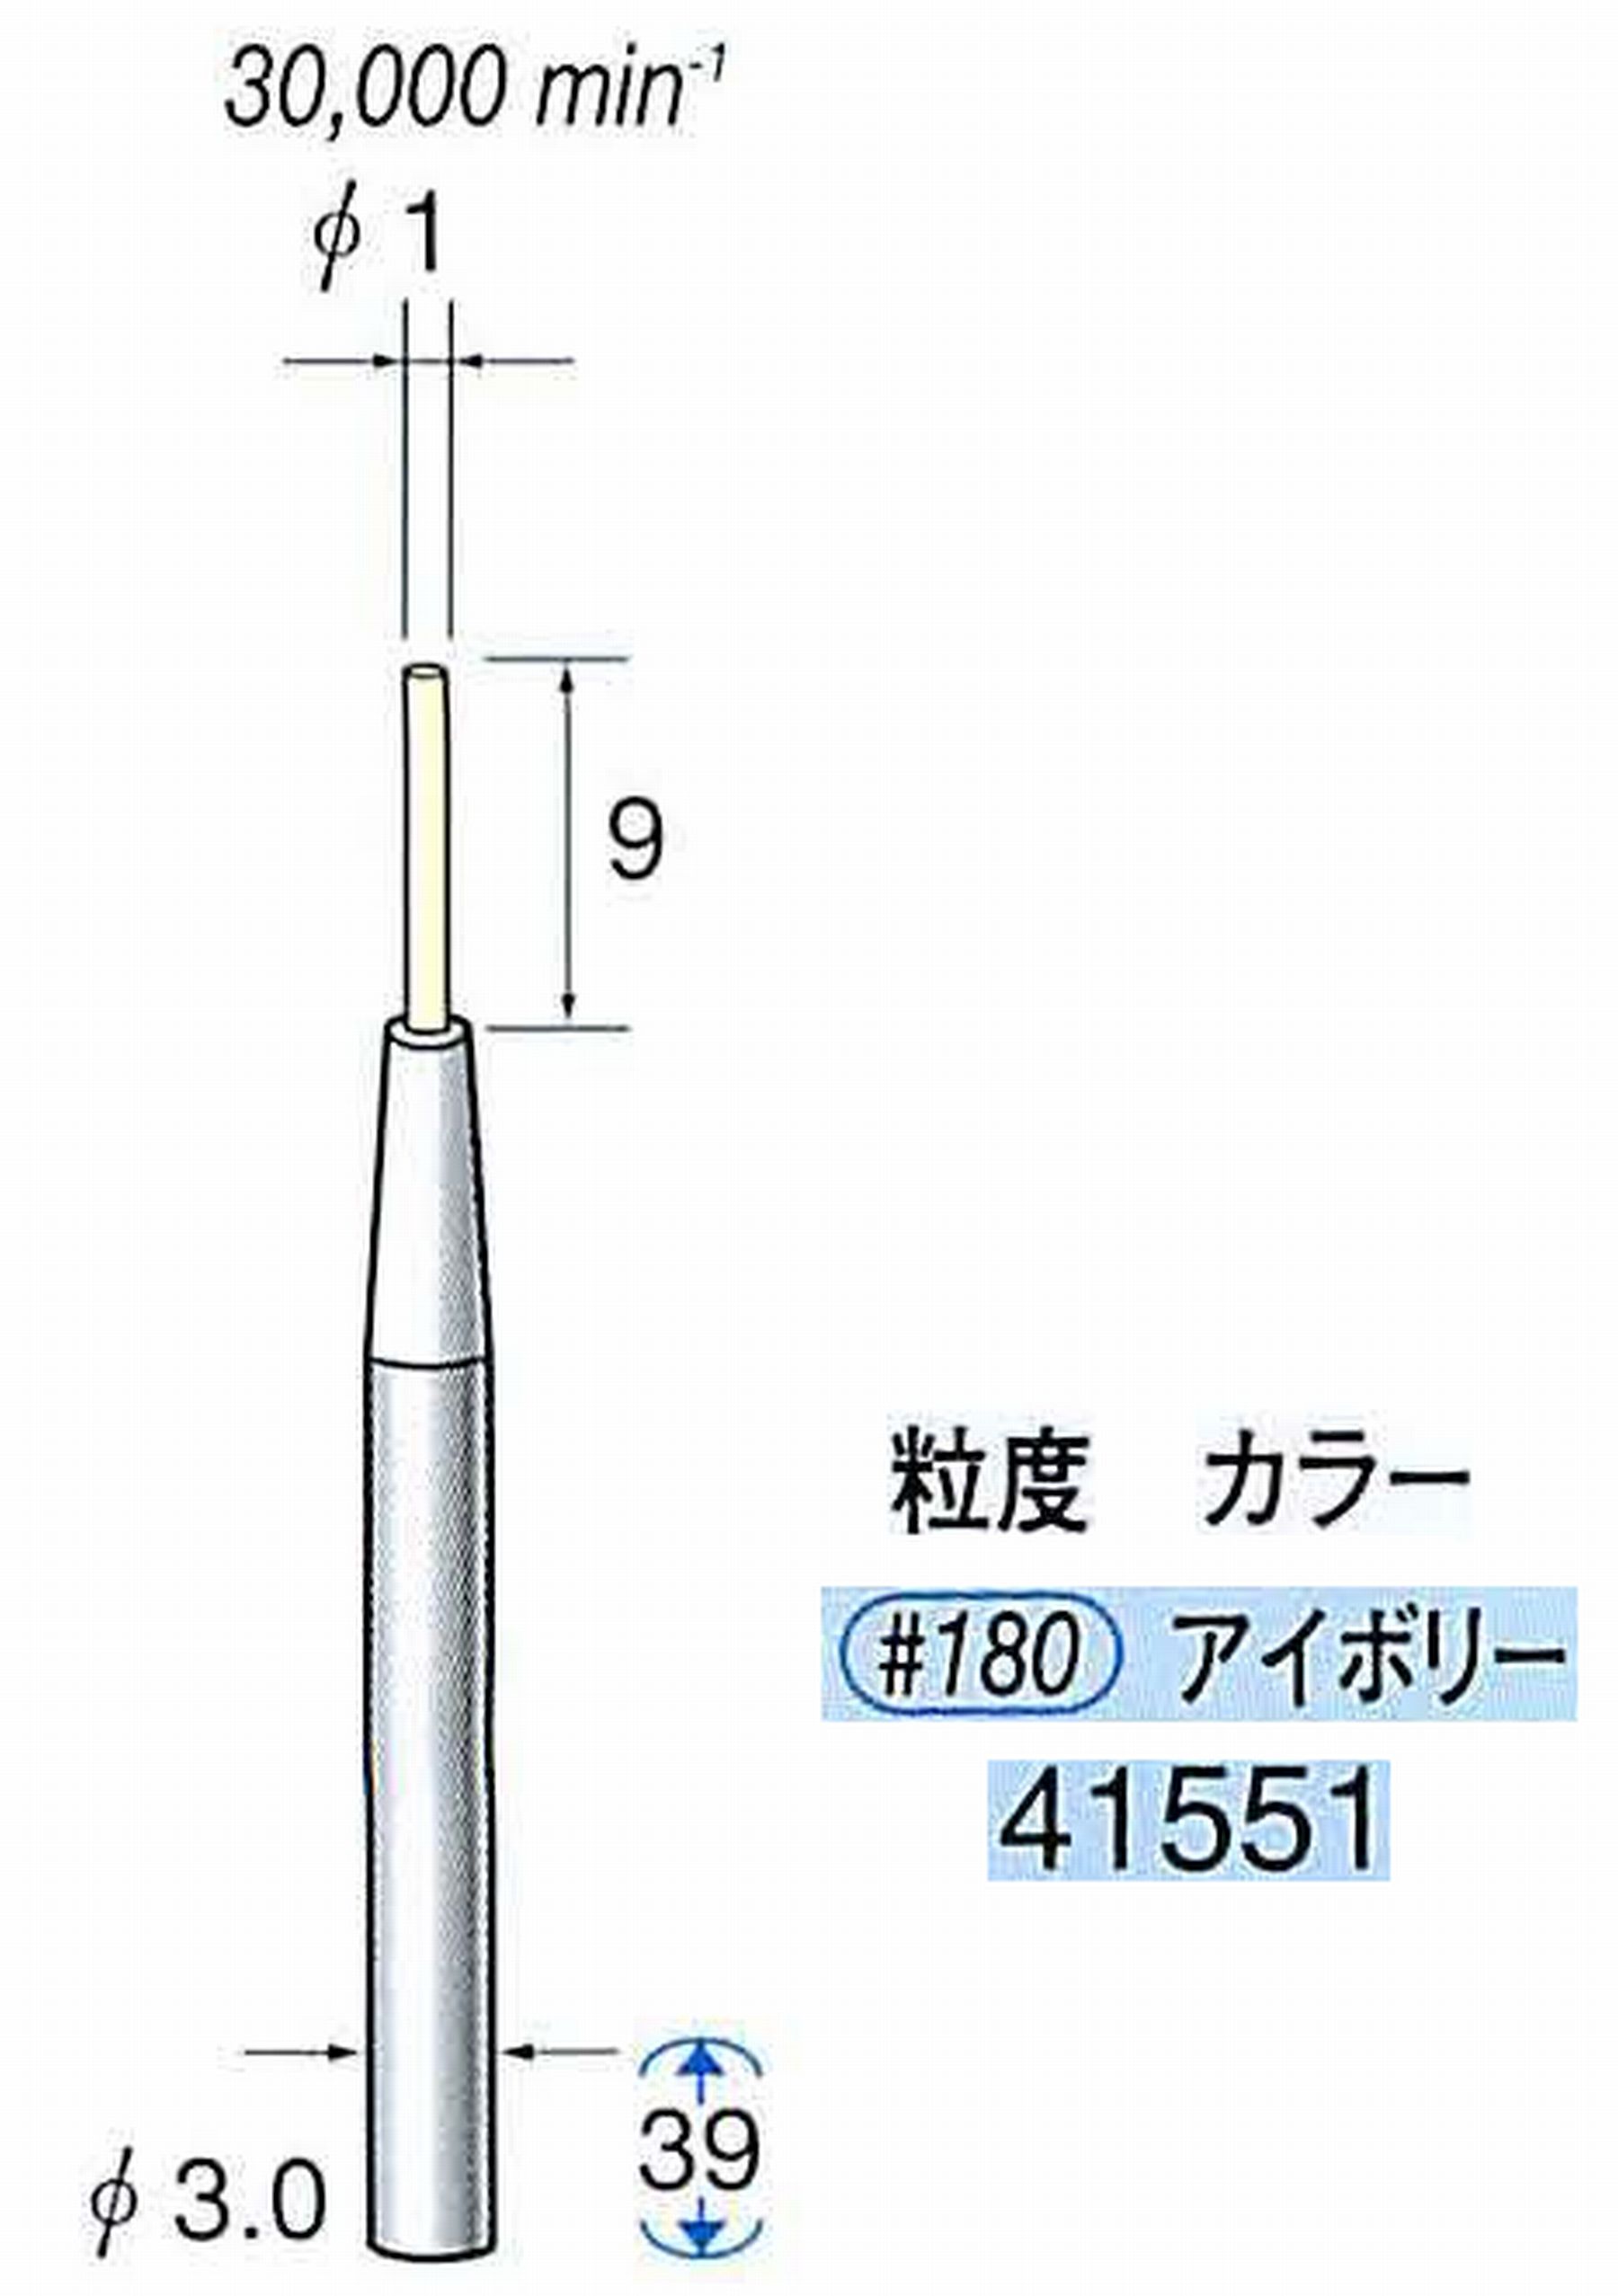 ナカニシ/NAKANISHI セラファイバー精密軸付砥石(カラー アイボリー) 軸径(シャンク) φ3.0mm 41551